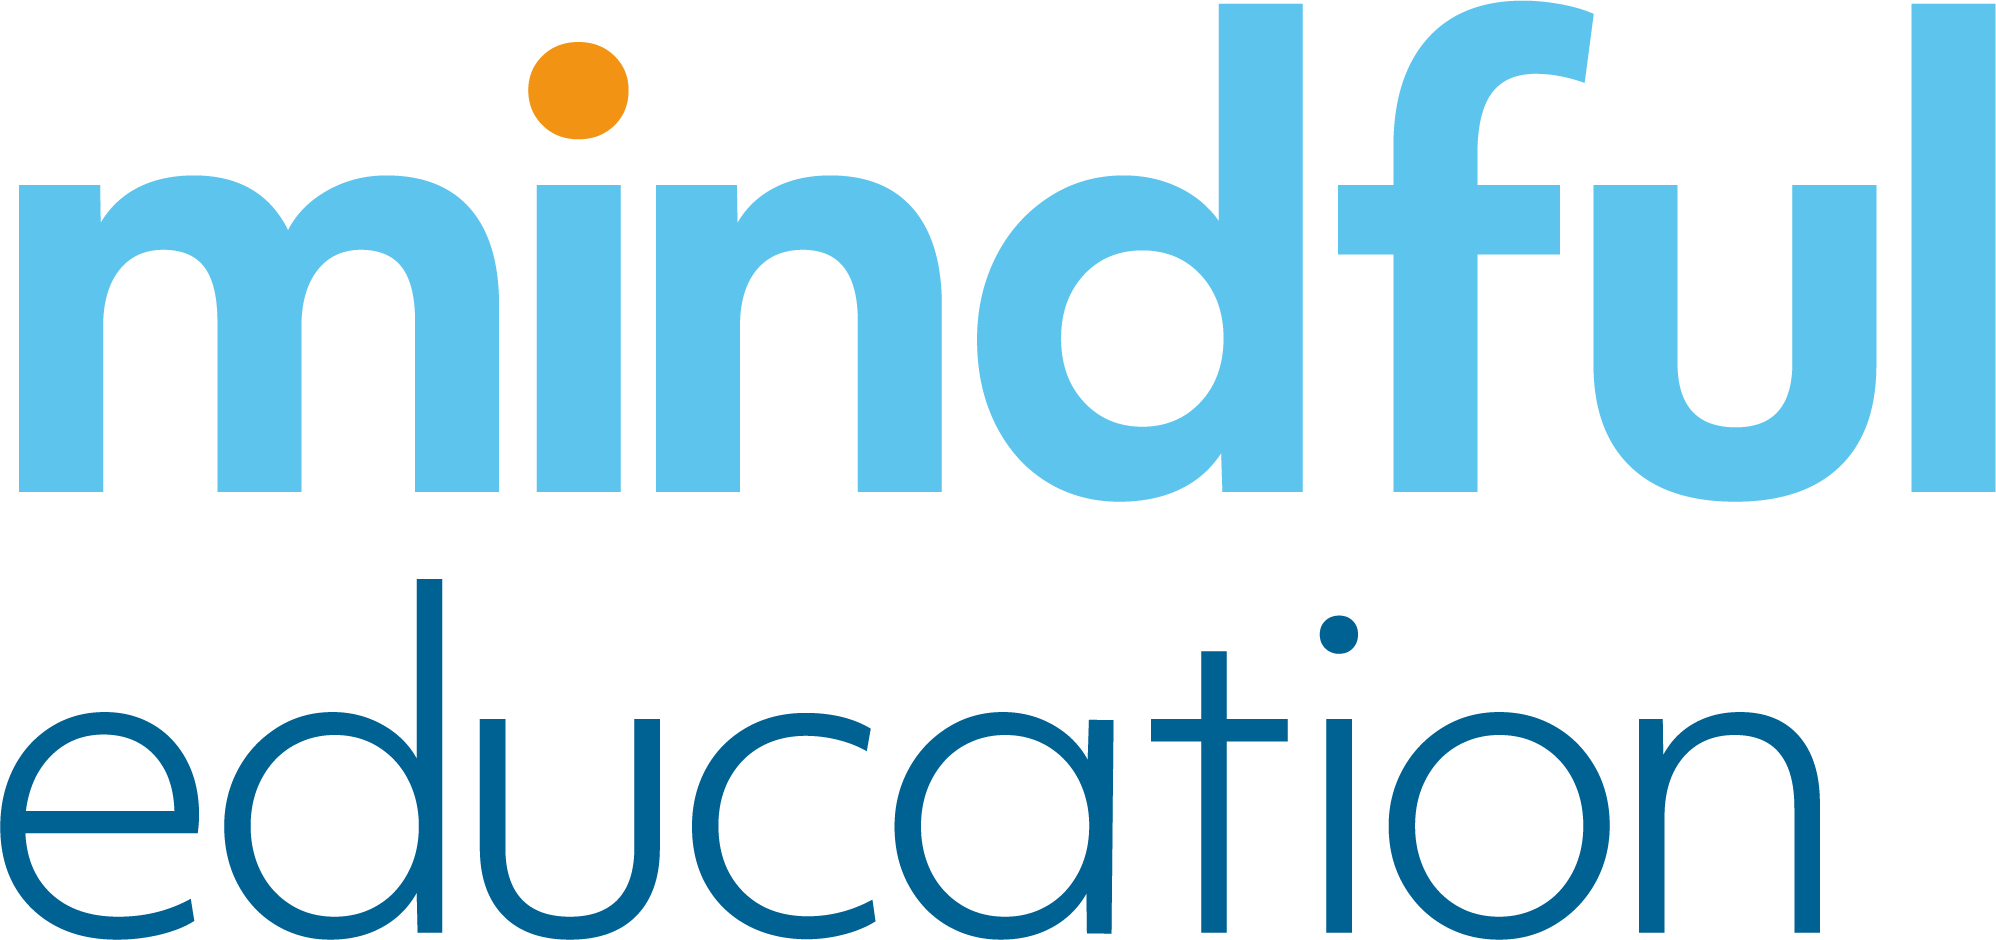 mindful education logo